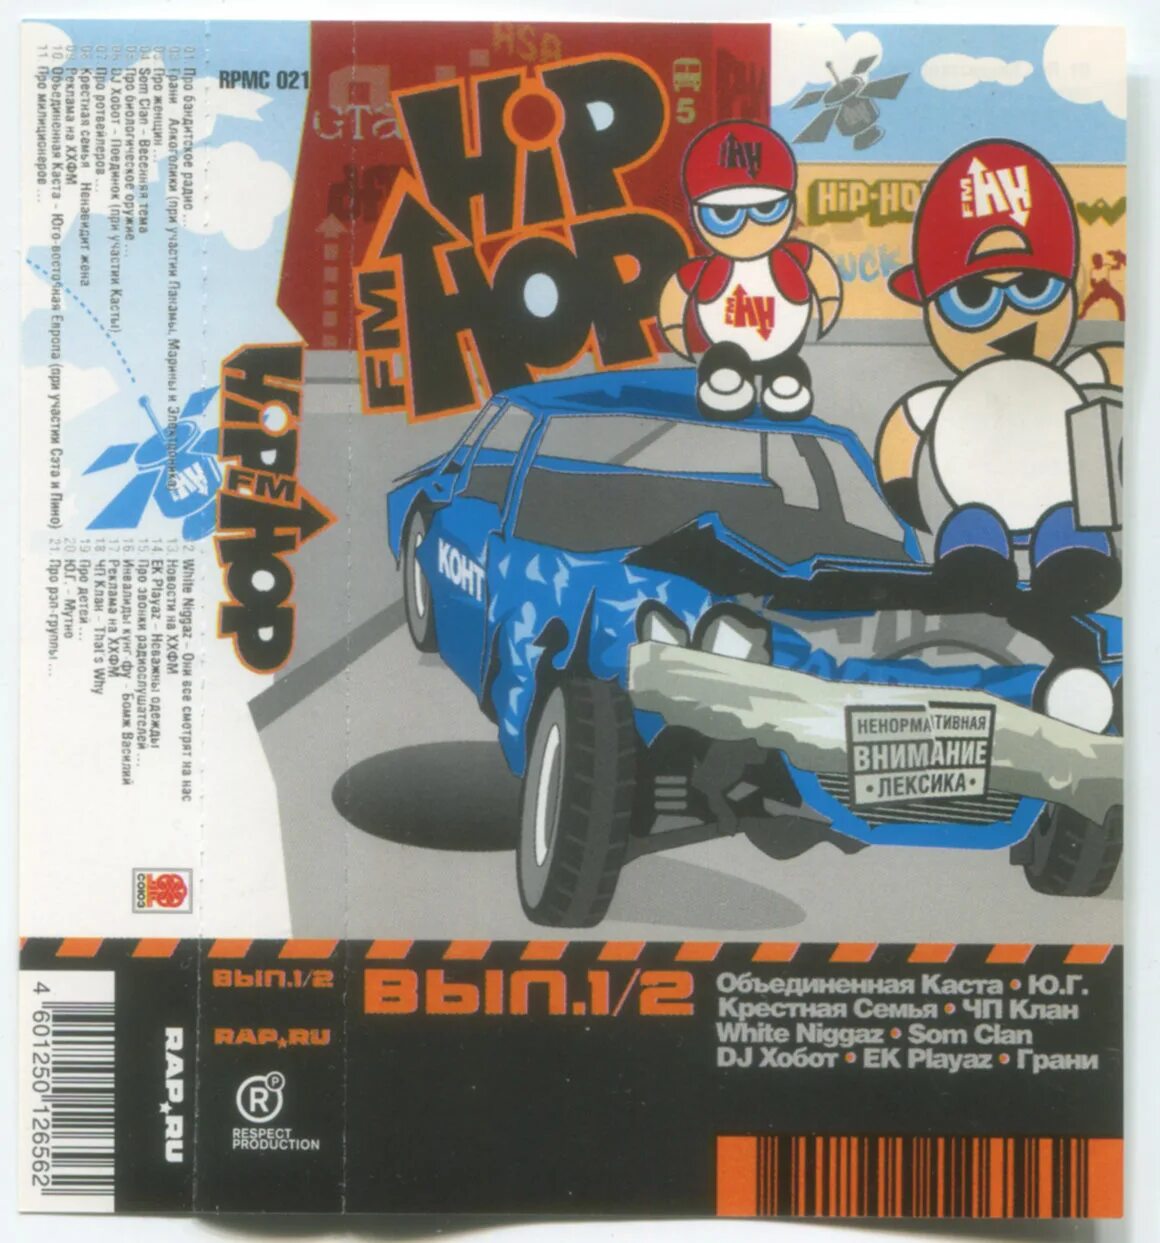 Hip-Hop fm - выпуск 1/2 (2004). Hip-Hop fm выпуск 3/4 2005 respect Production. DJ хобот и Проша плавленый винил.